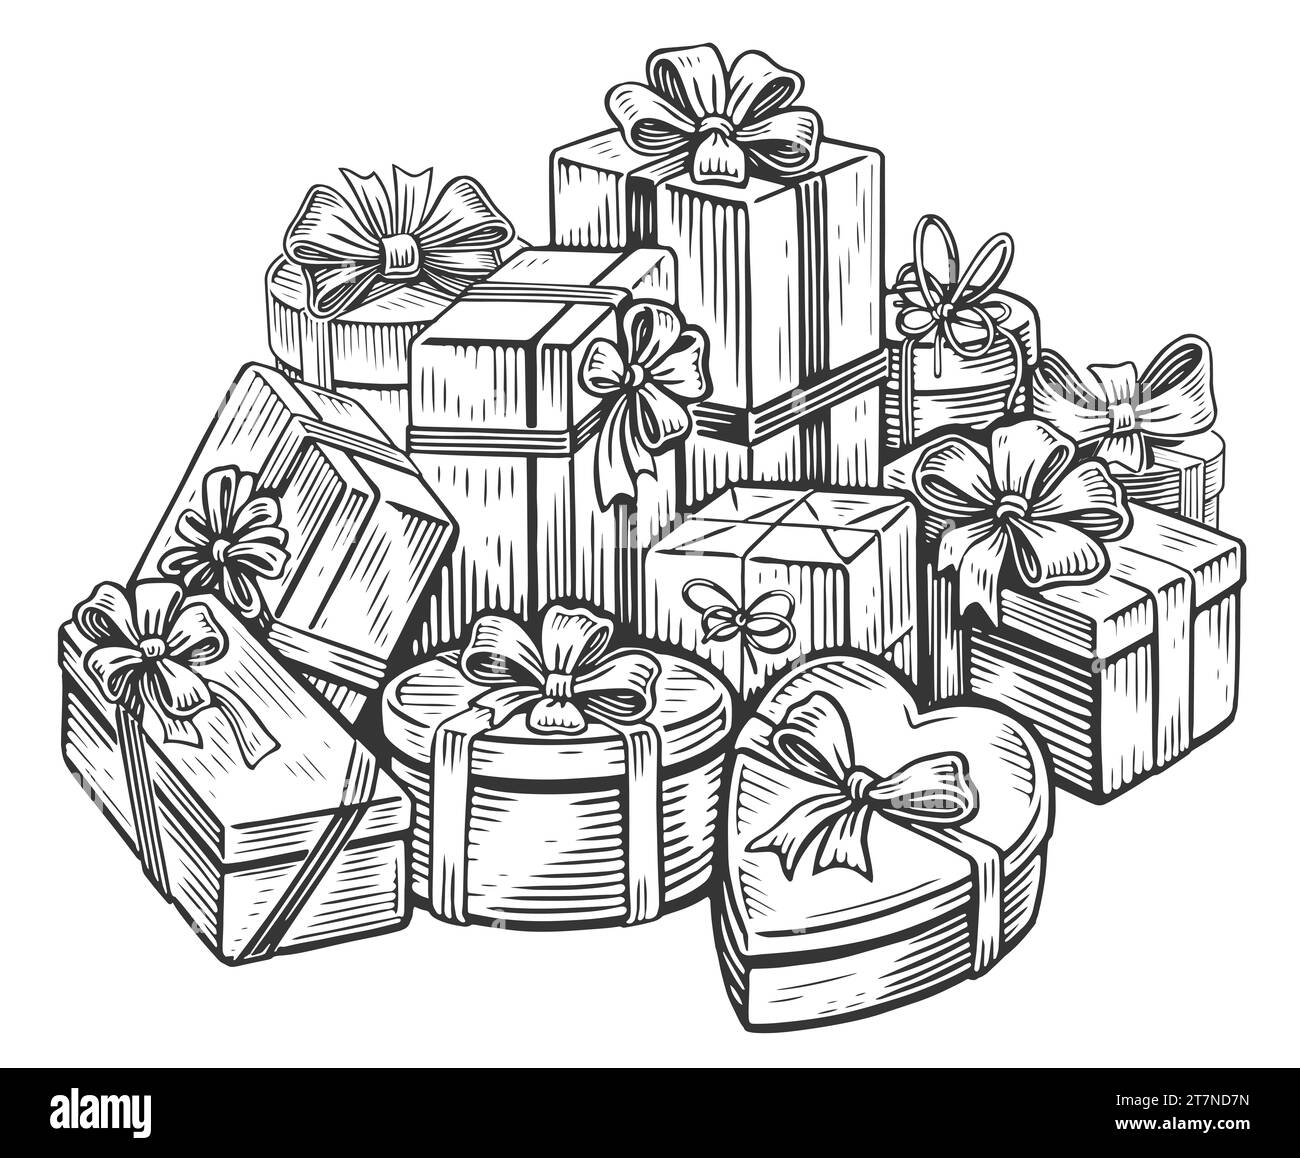 Grosse pile de boîtes cadeaux avec des arcs. Beaucoup de cadeaux pour Noël ou anniversaire. Esquissez une illustration vintage Banque D'Images